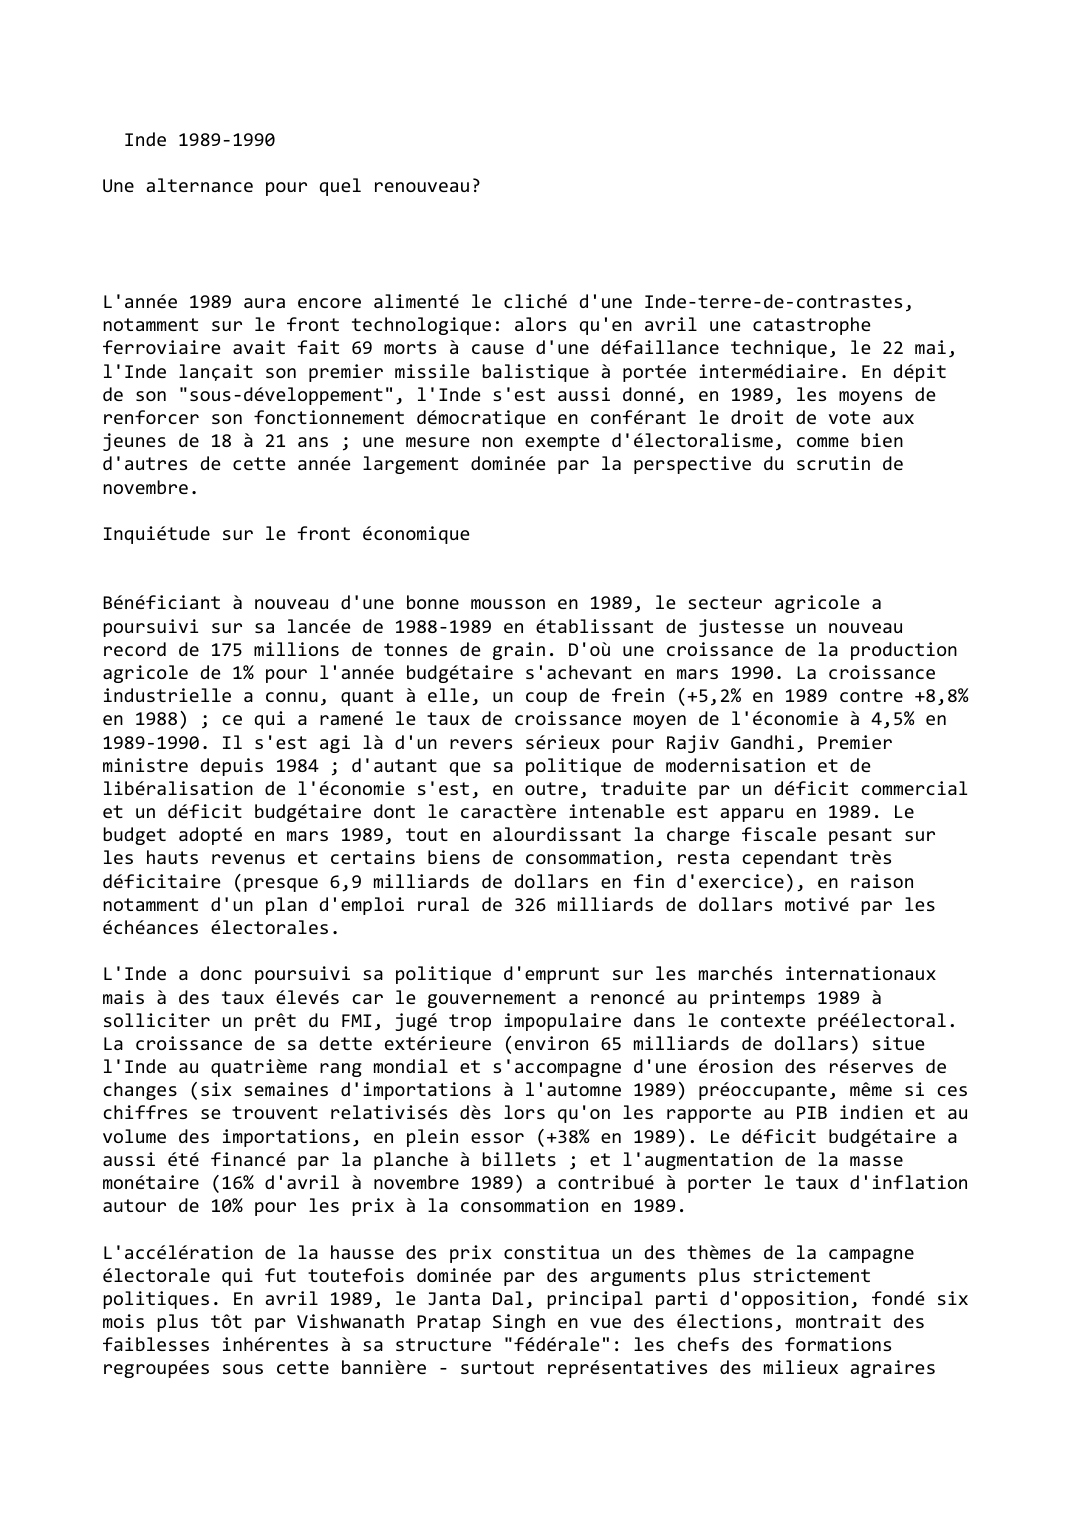 Prévisualisation du document Inde (1989-1990)

Une alternance pour quel renouveau?